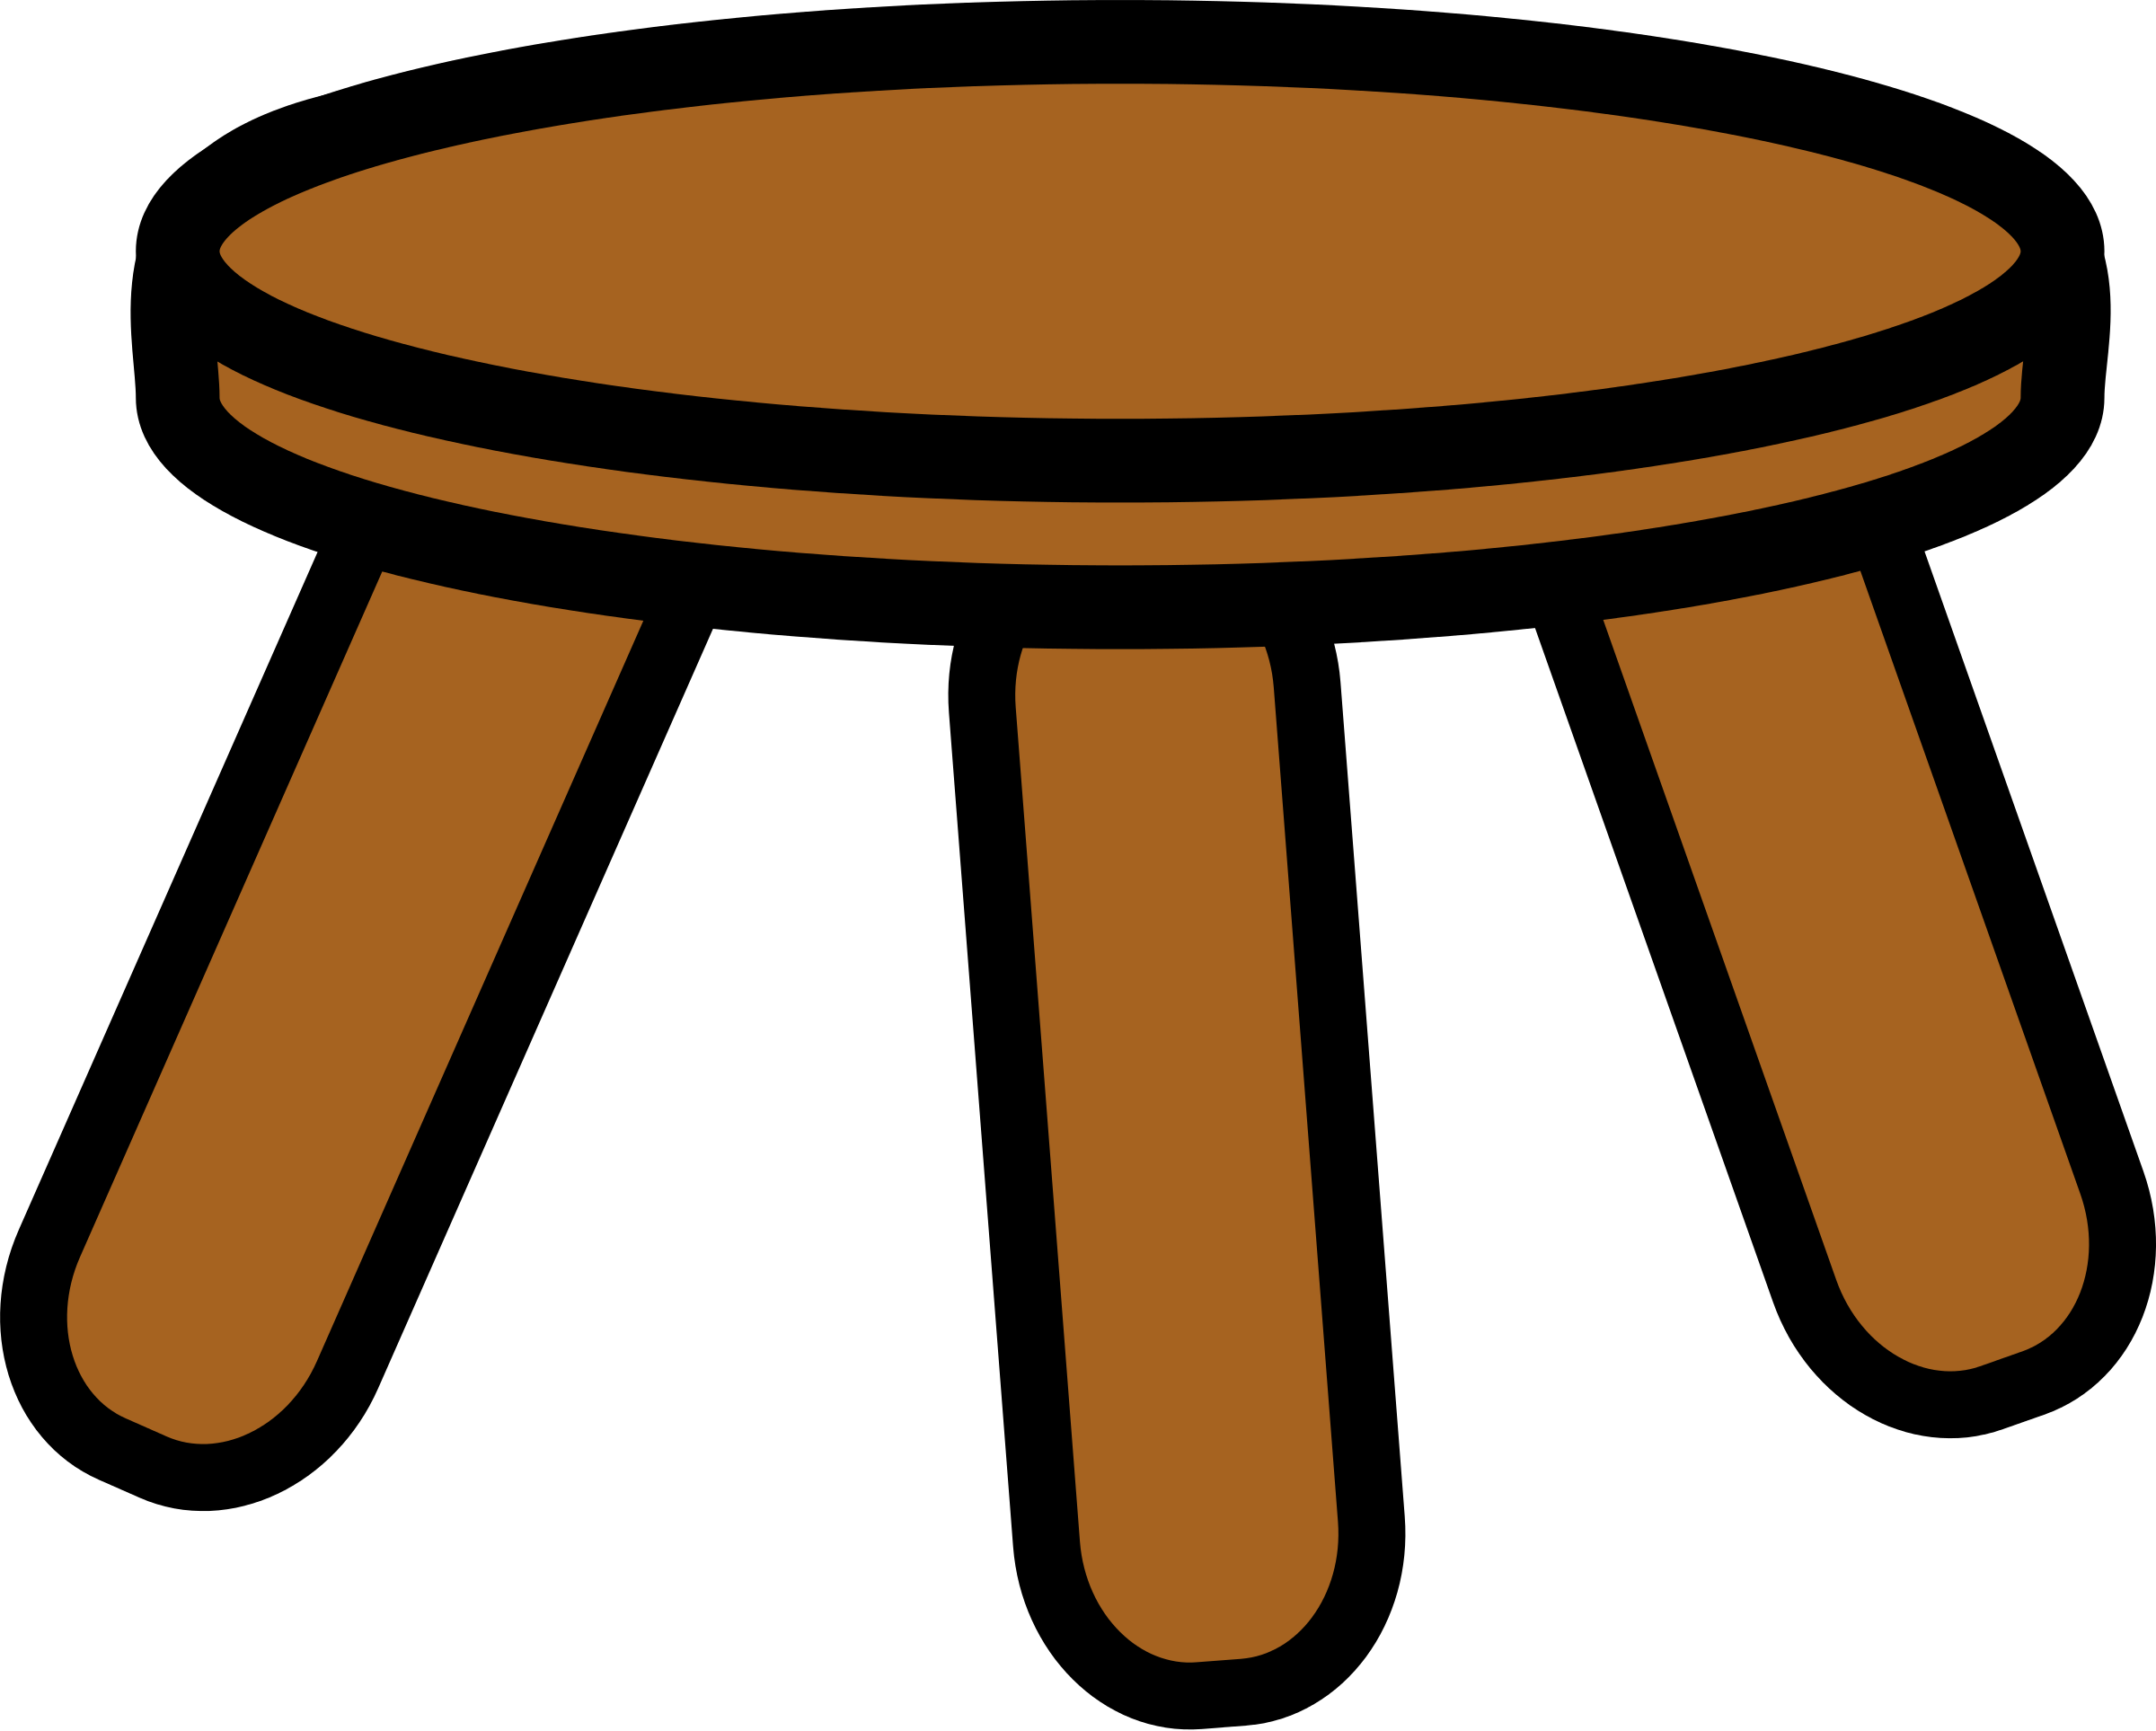 four legged stool clipart